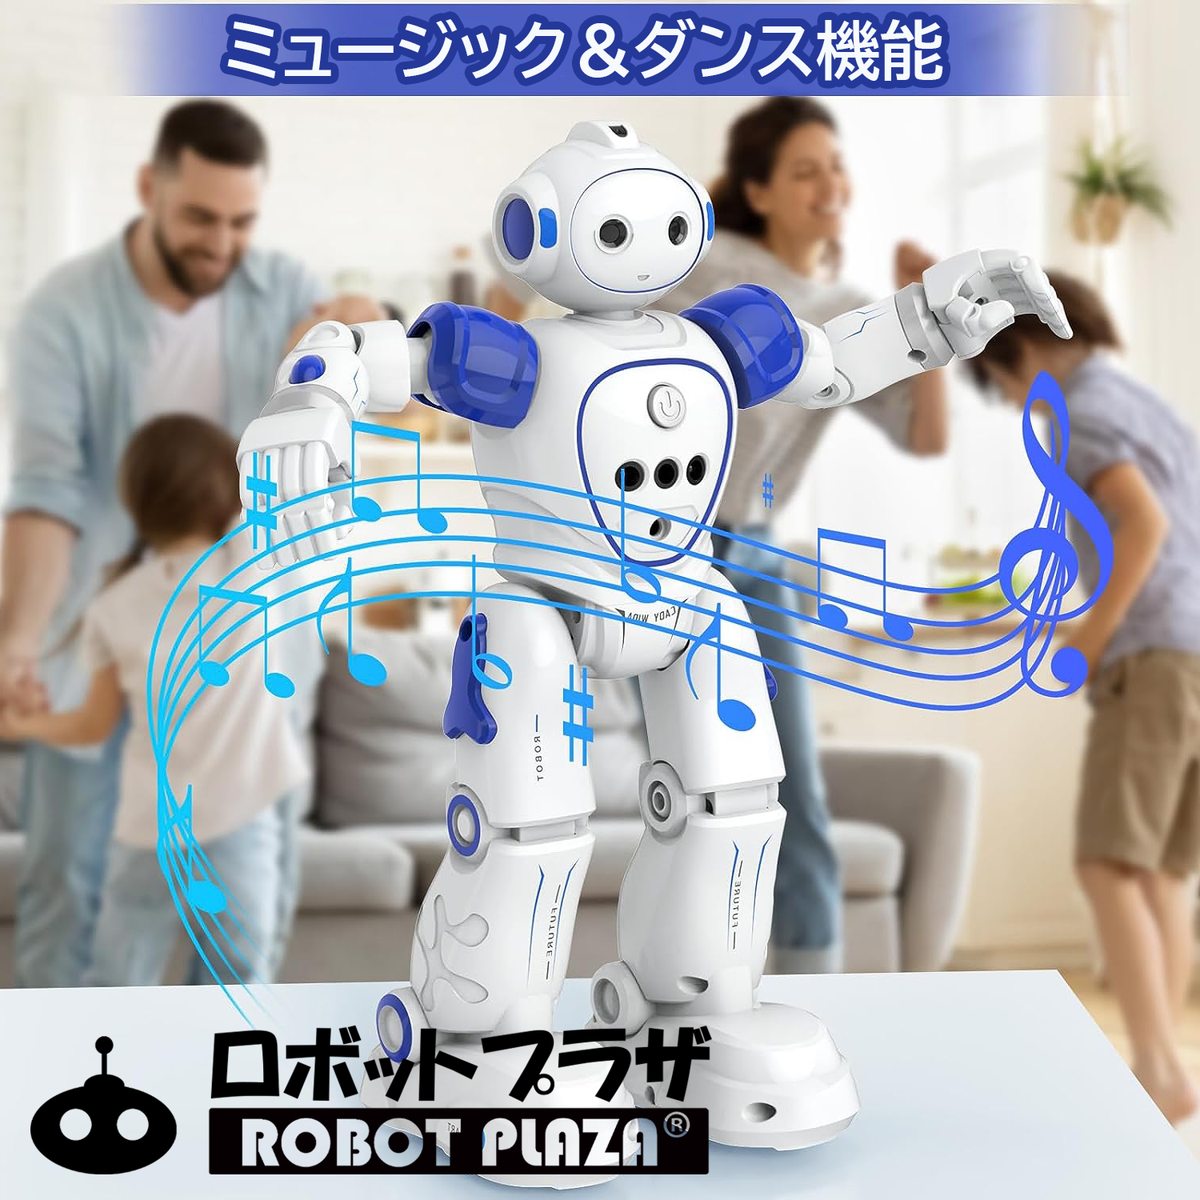  человек type робот игрушка .. английский язык ...... японский язык инструкция простой программирование день рождения подарок ребенок игрушка мужчина ученик начальной школы 